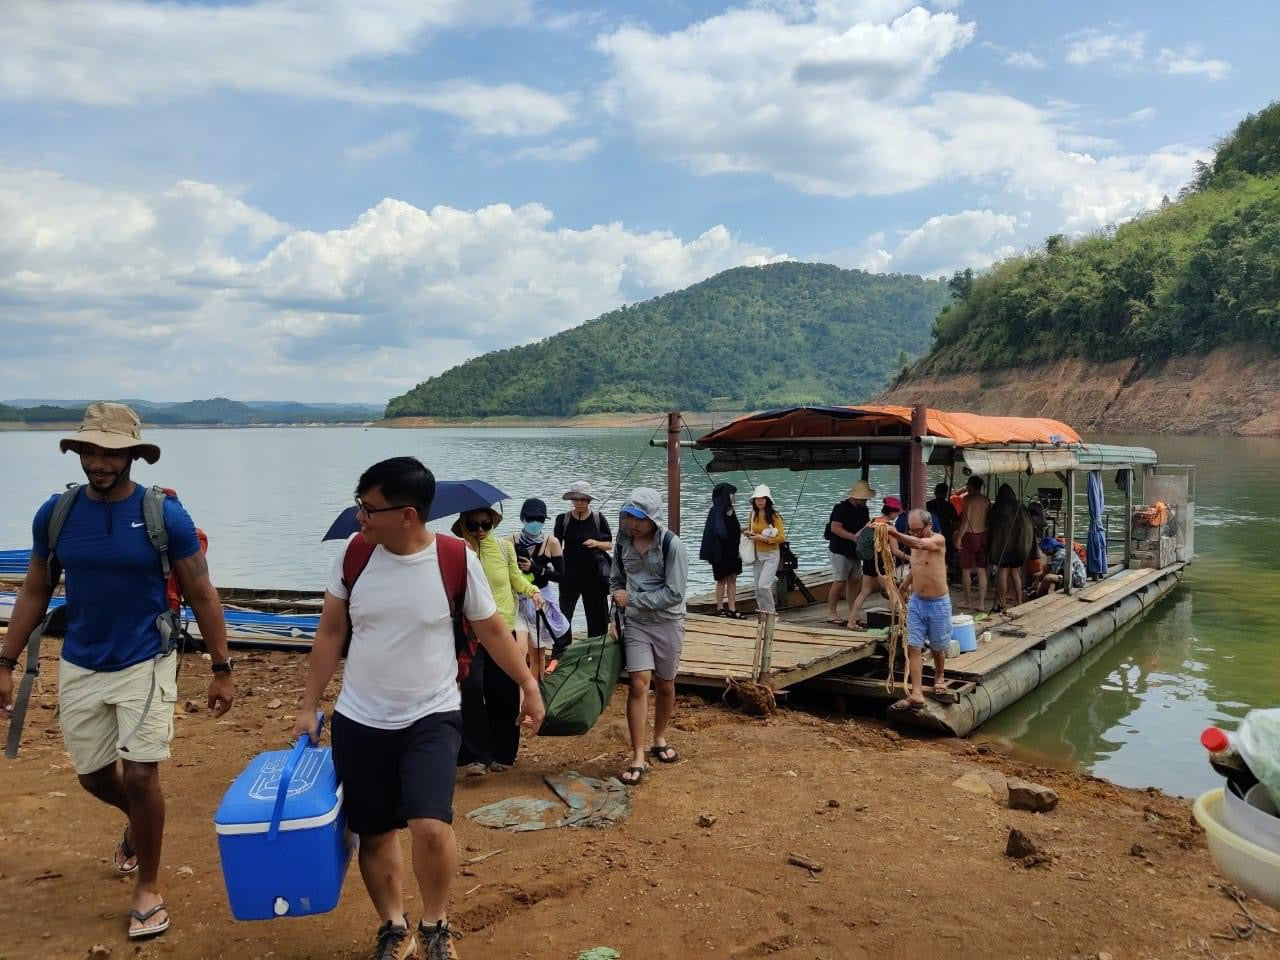 69B: (2일) Lieng Nung 폭포와 Ta Dung 호수: Daknong 지방의 폭포와 장엄한 호수 속에 깊이 숨겨져 있습니다.